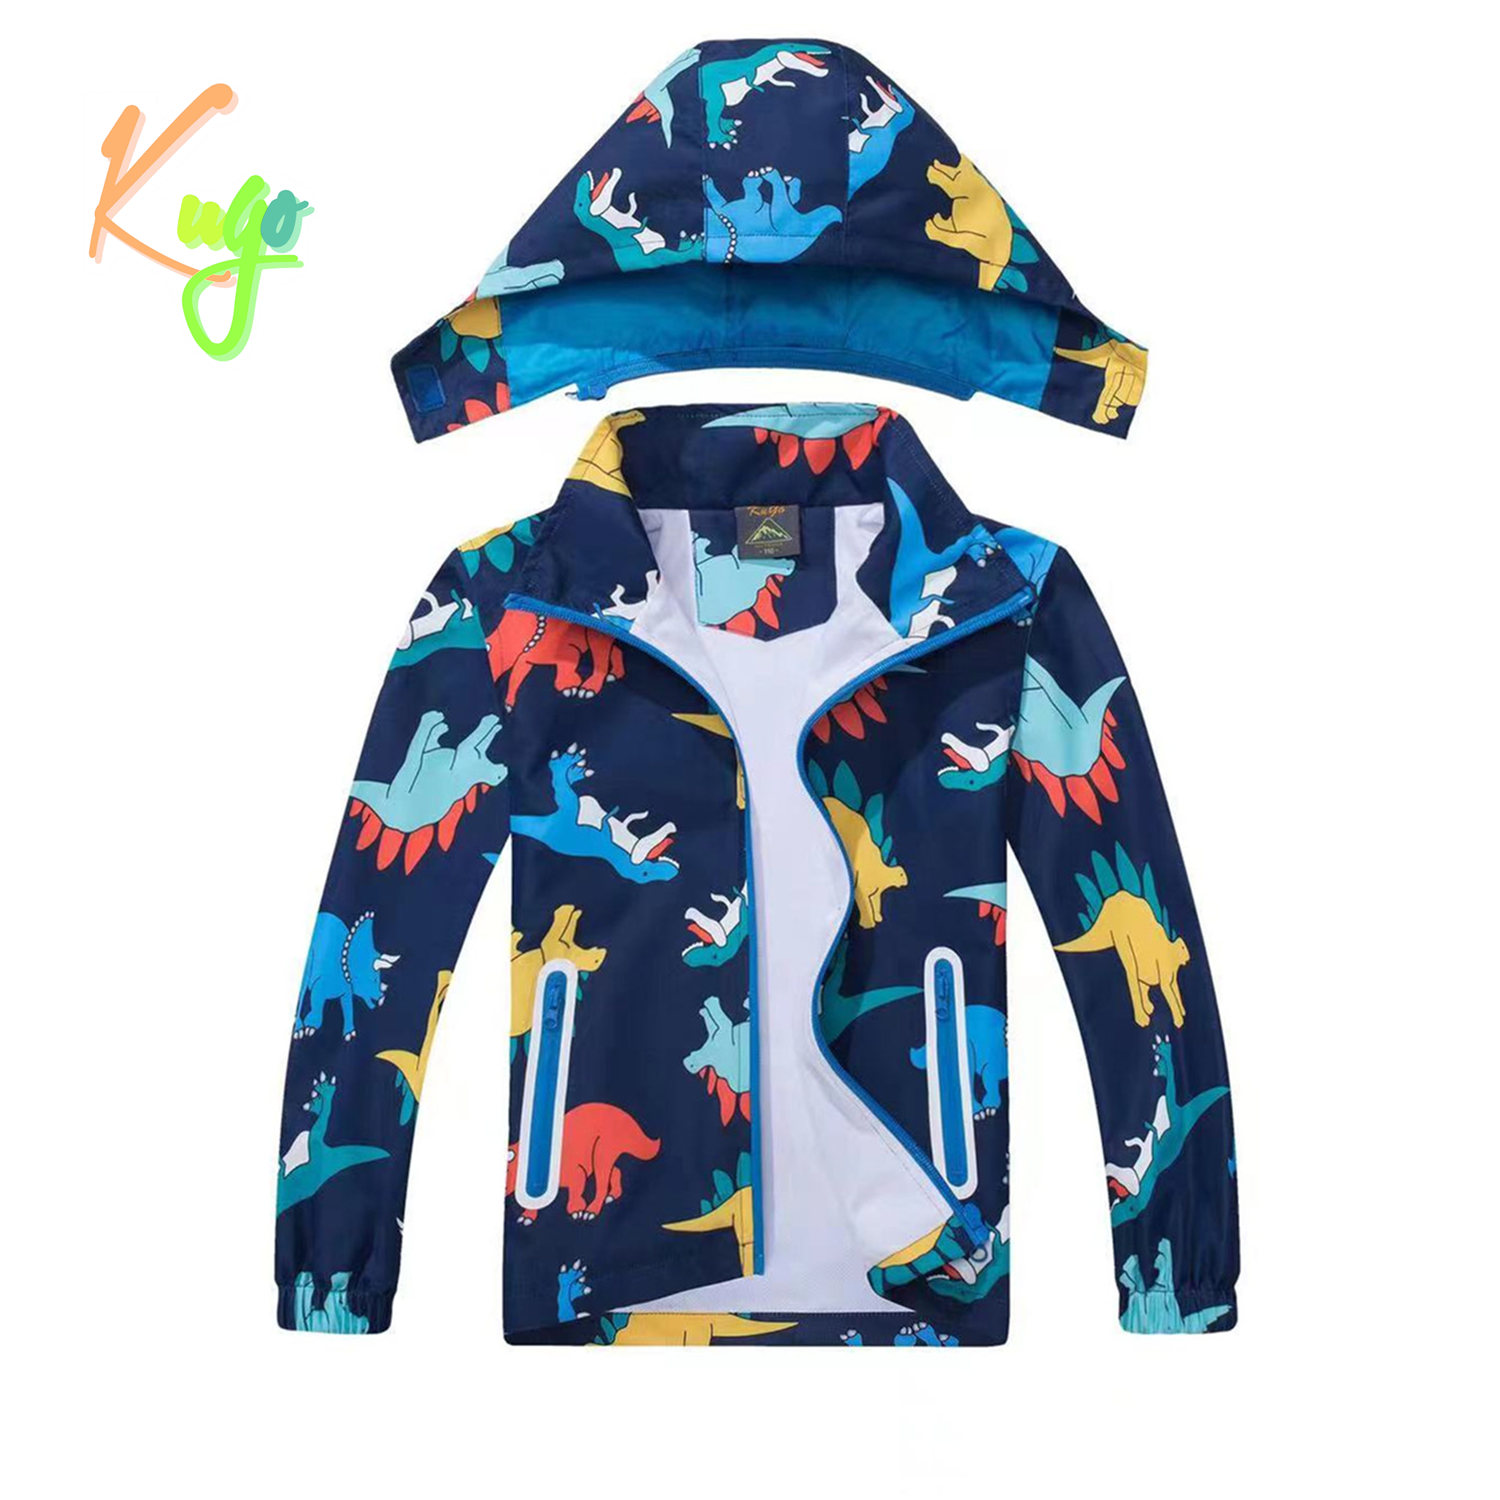 Chlapecká jarní, podzimní bunda - KUGO B2849, tmavě modrá / dinosaurus Barva: Modrá tmavě, Velikost: 110